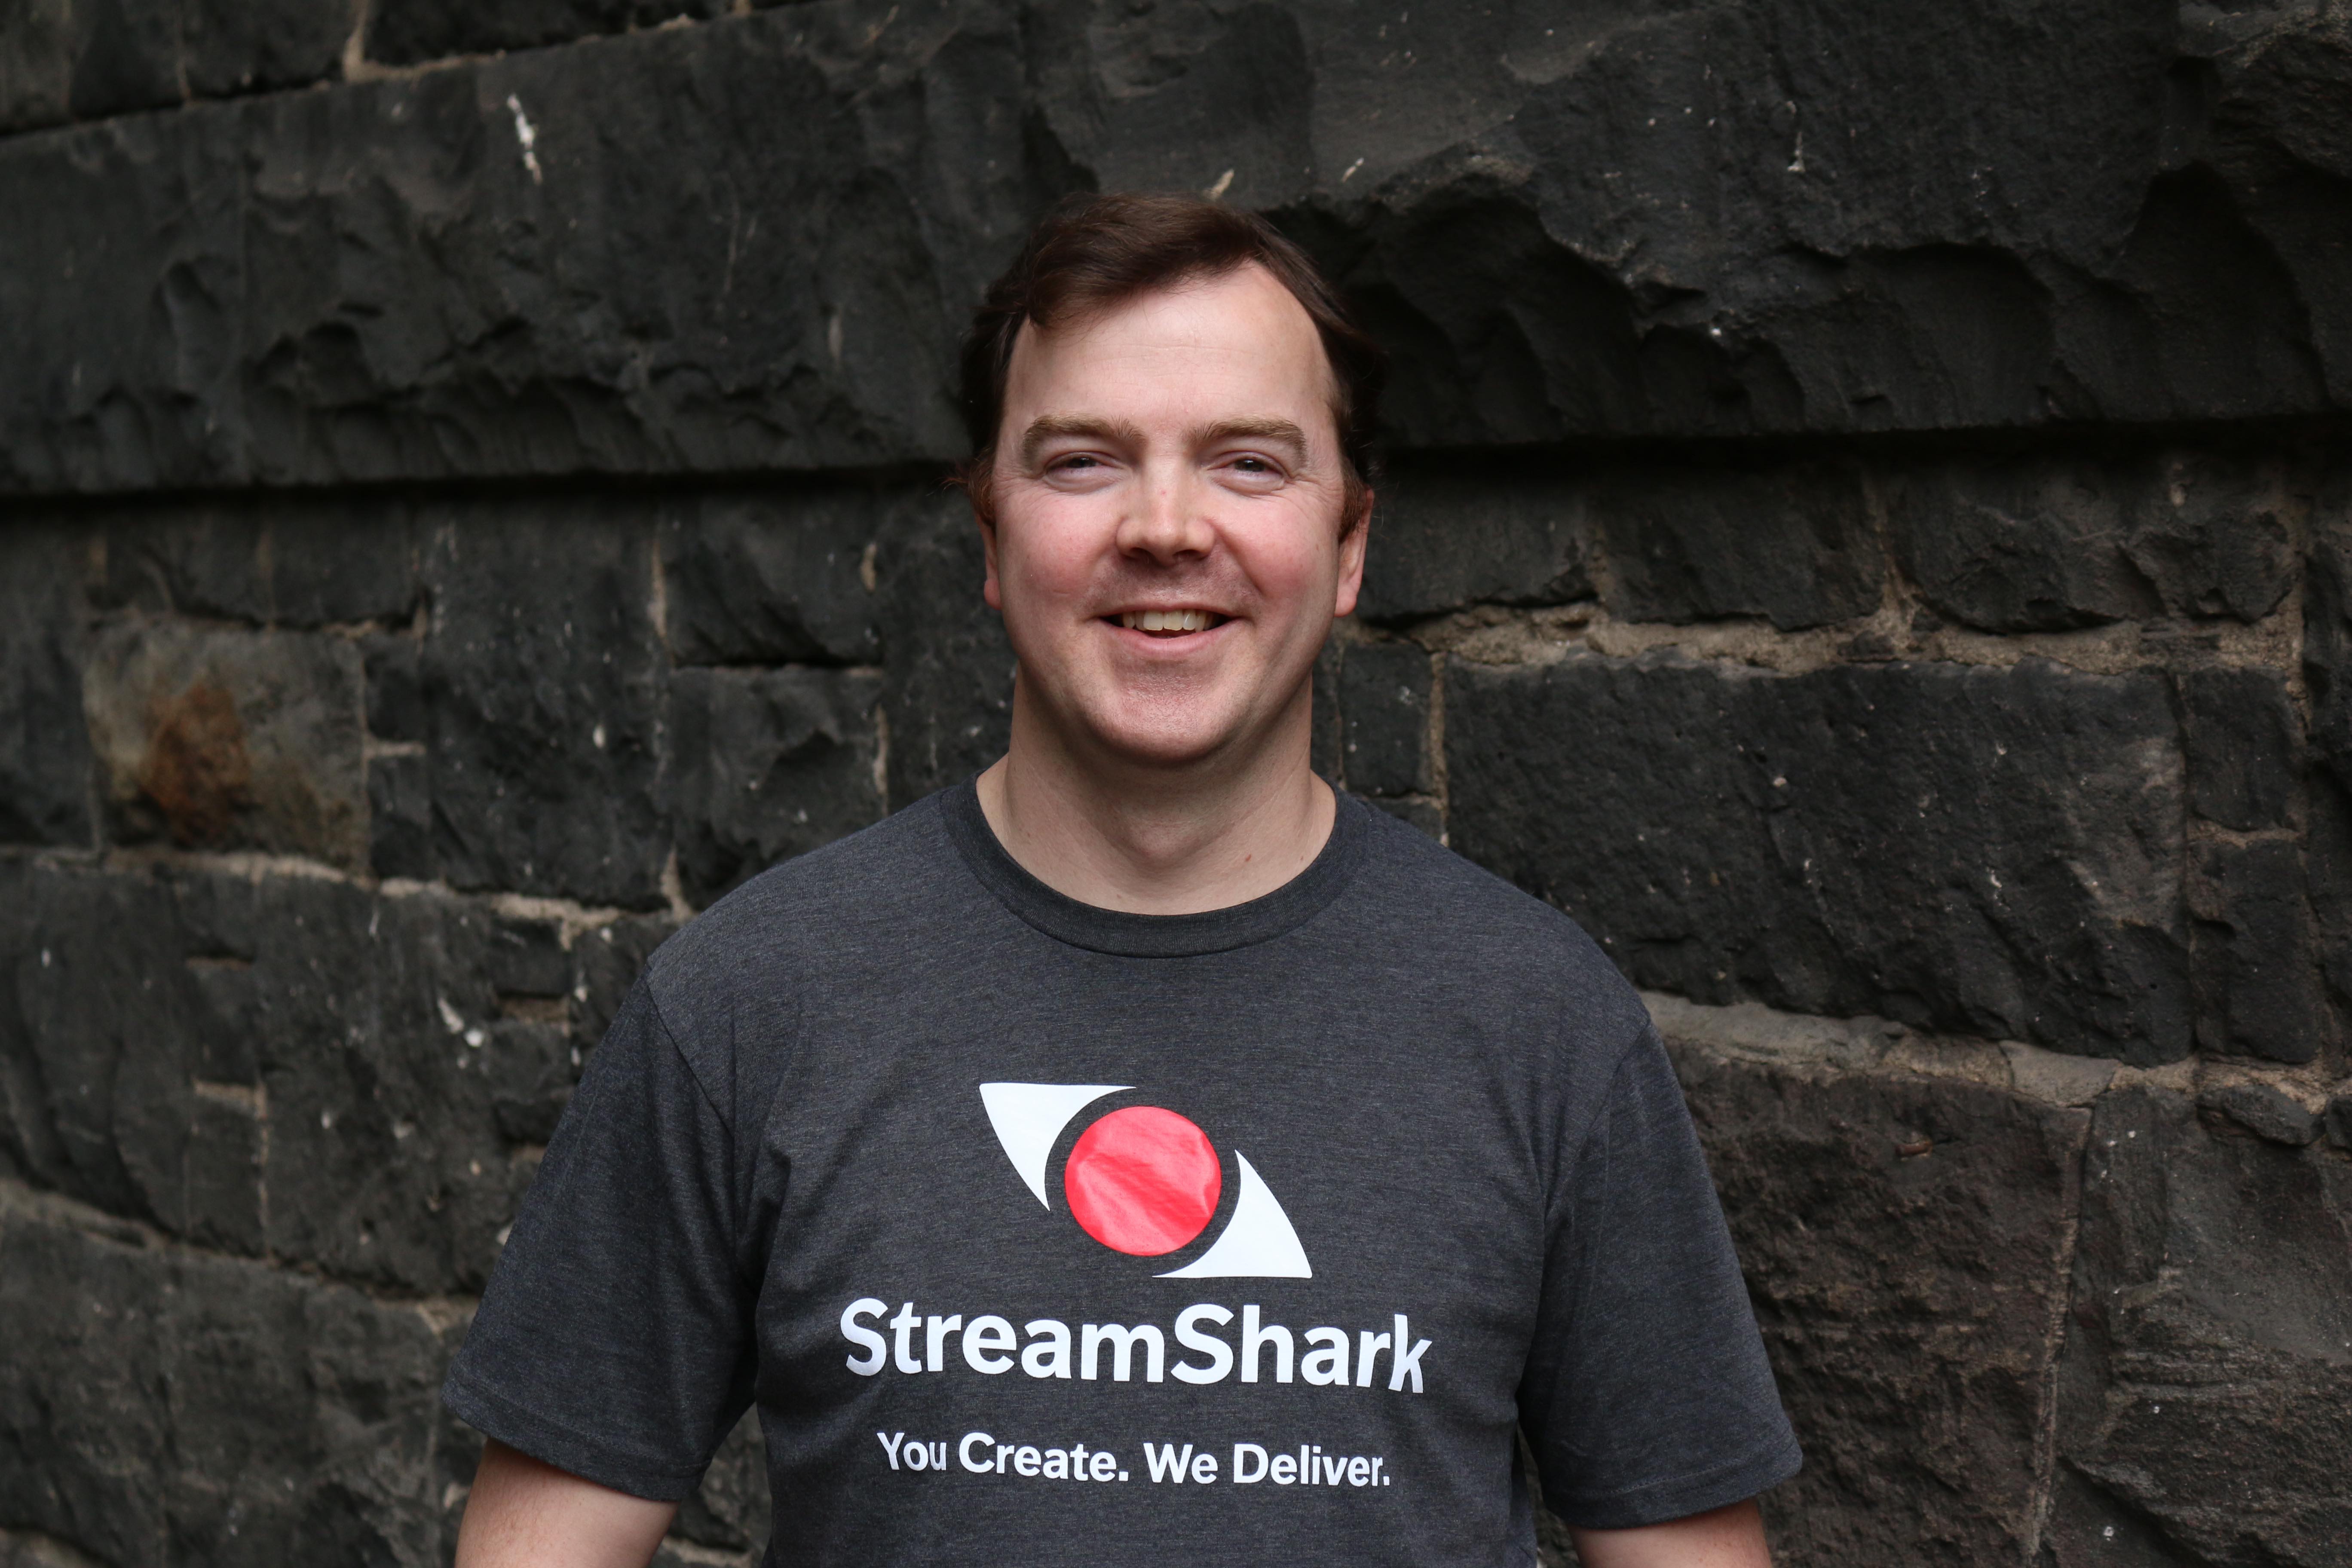 StreamShark CEO James Broberg